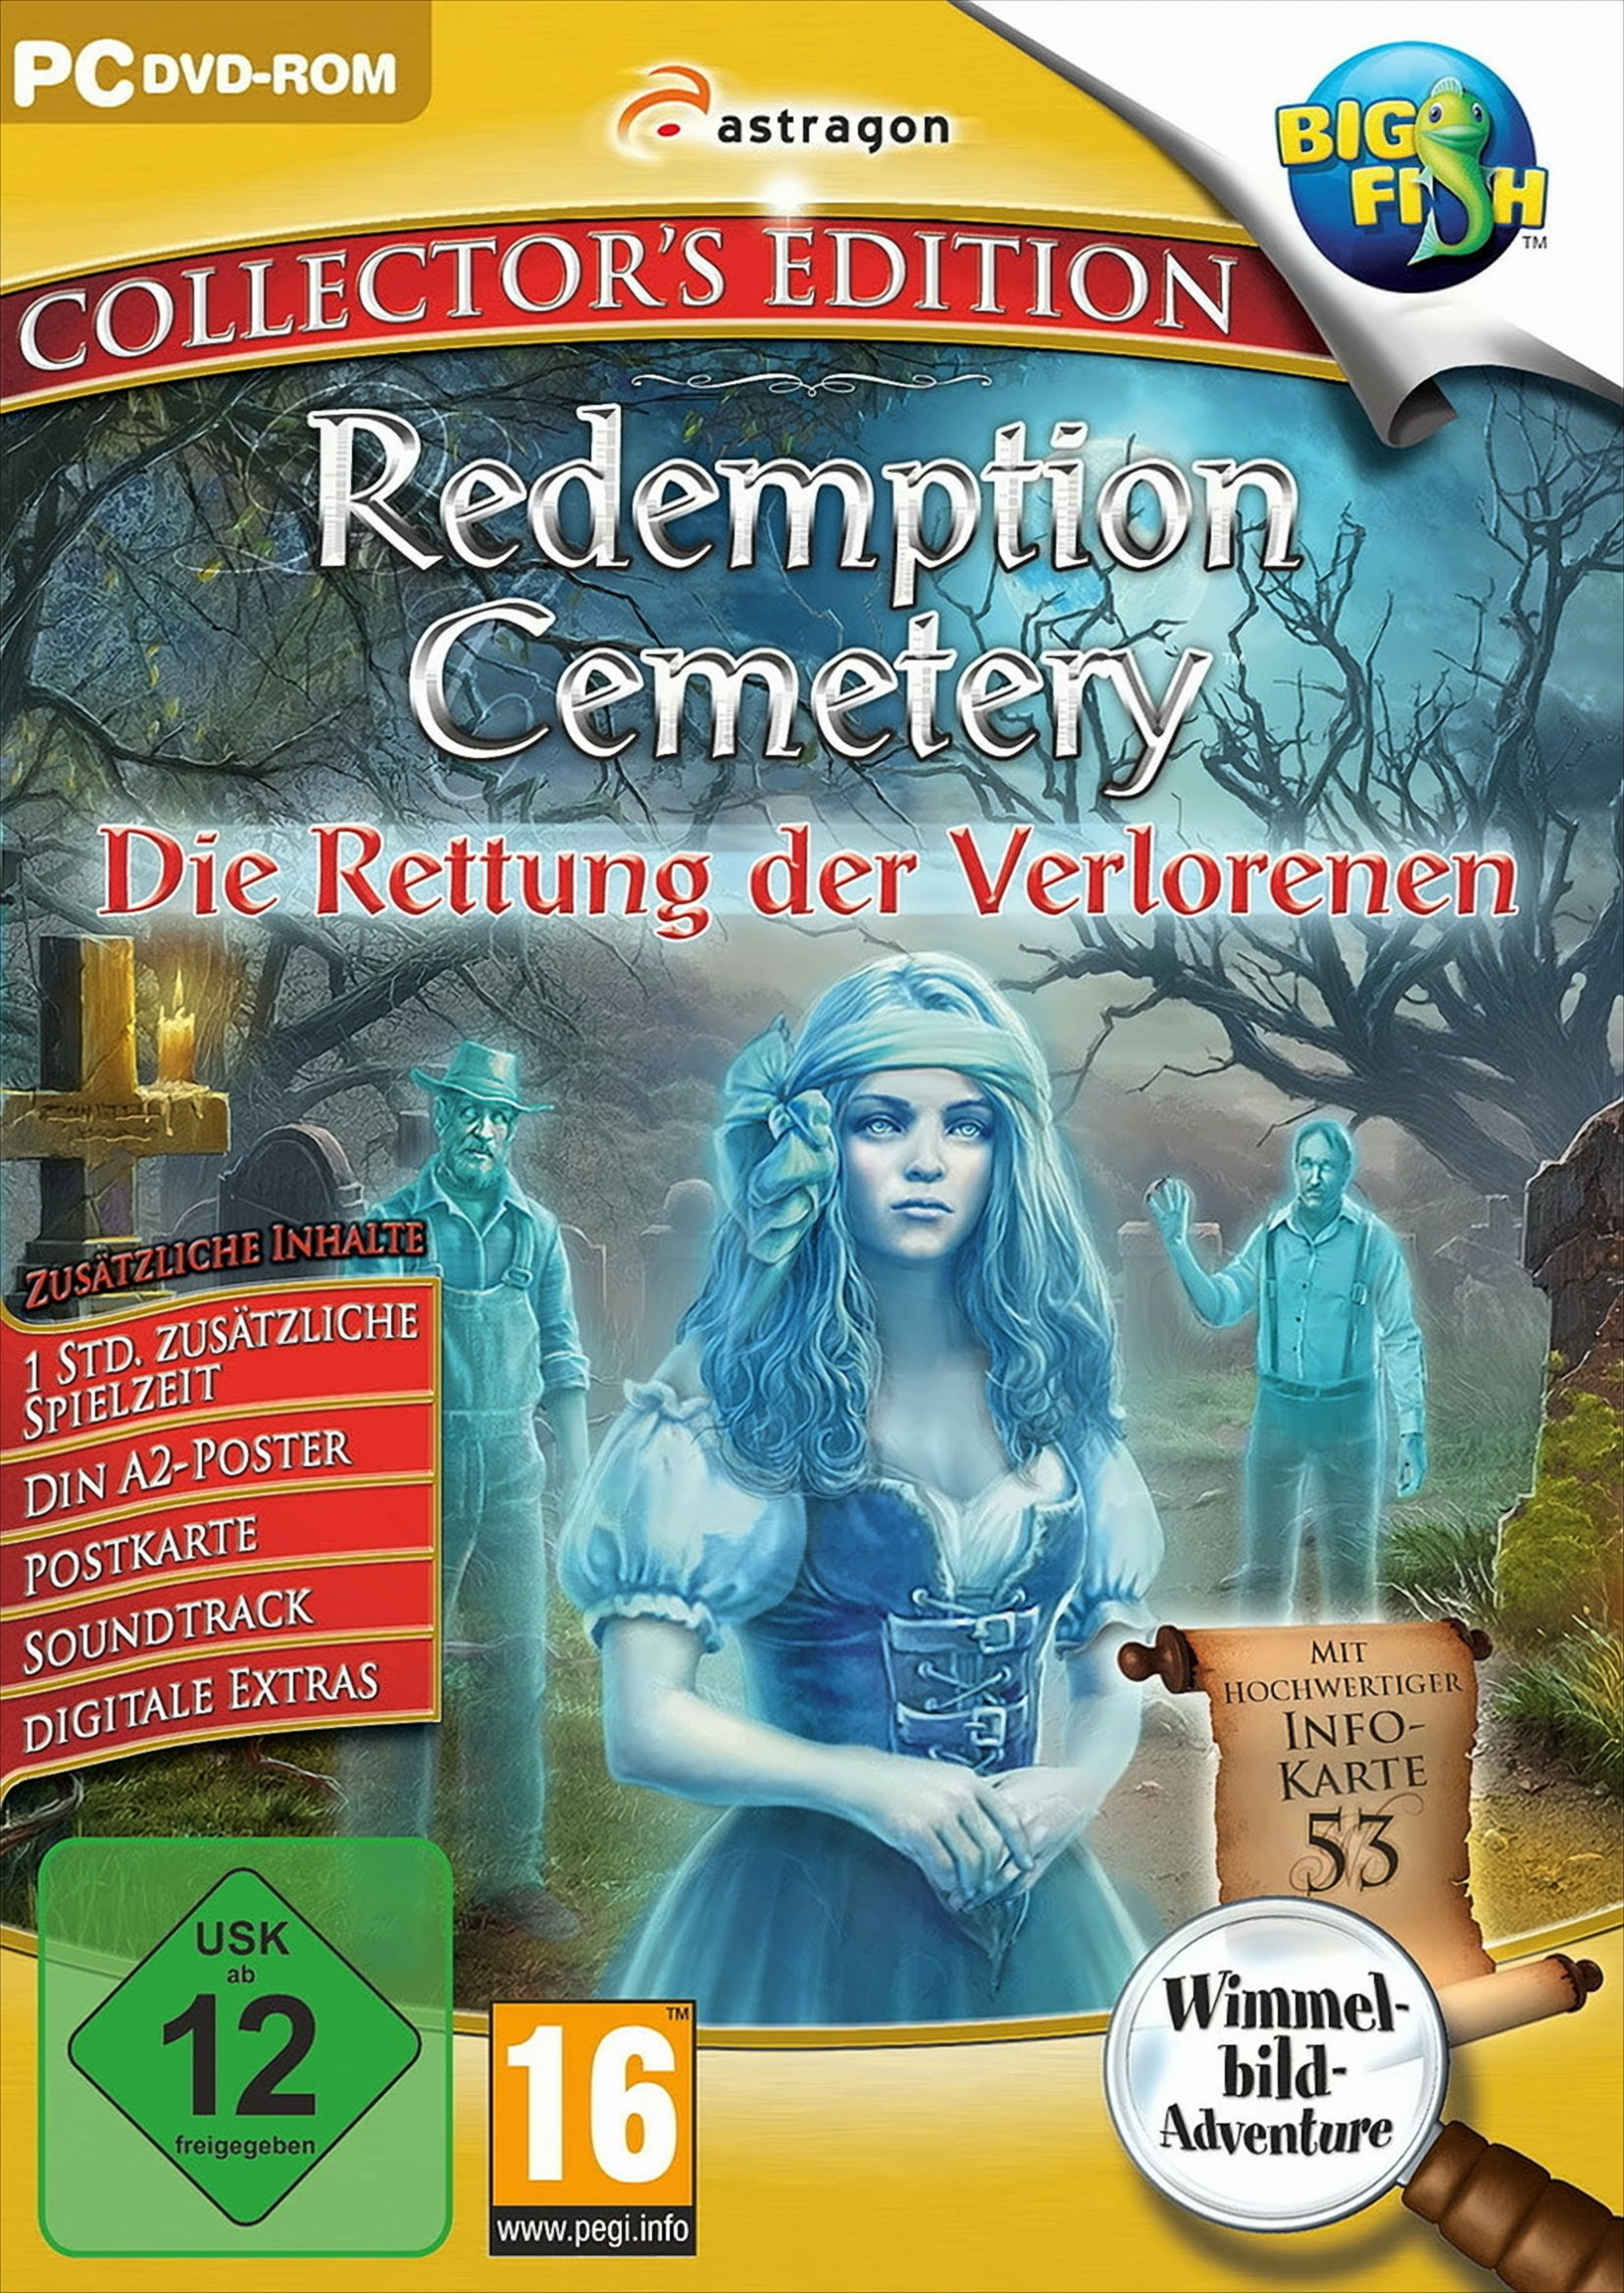 Redemption Cemetery: der [PC] - Rettung Verlorenen Die Collector\'s Edition 